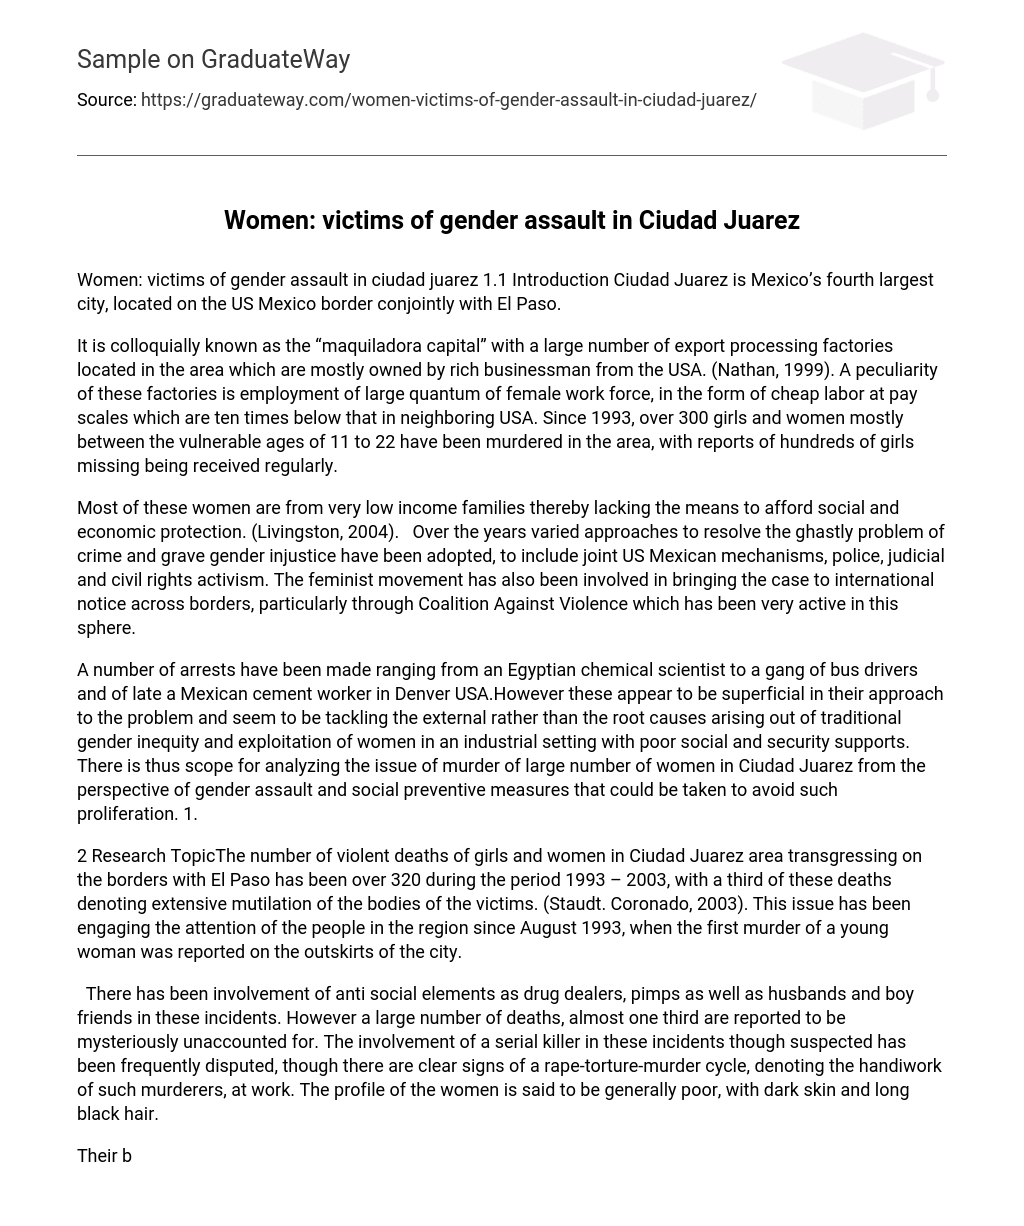 Women: victims of gender assault in Ciudad Juarez